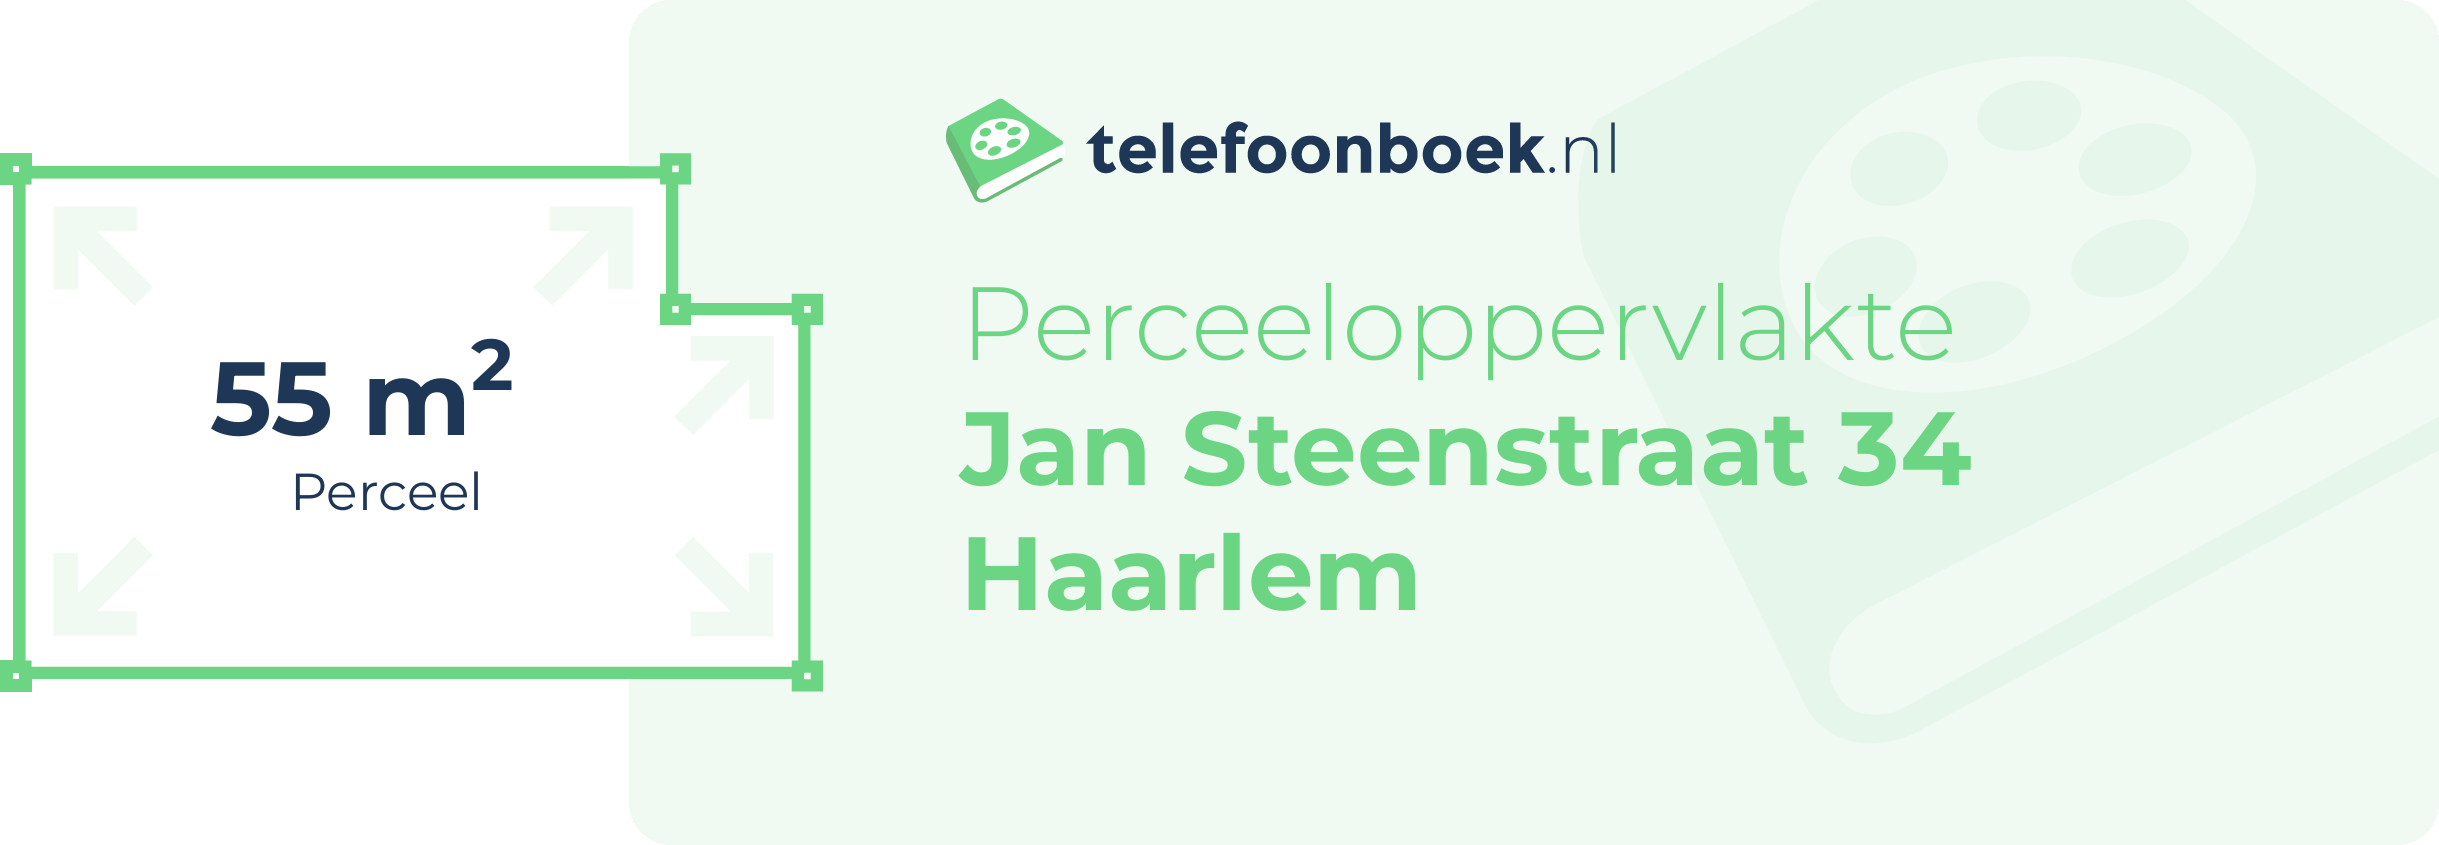 Perceeloppervlakte Jan Steenstraat 34 Haarlem